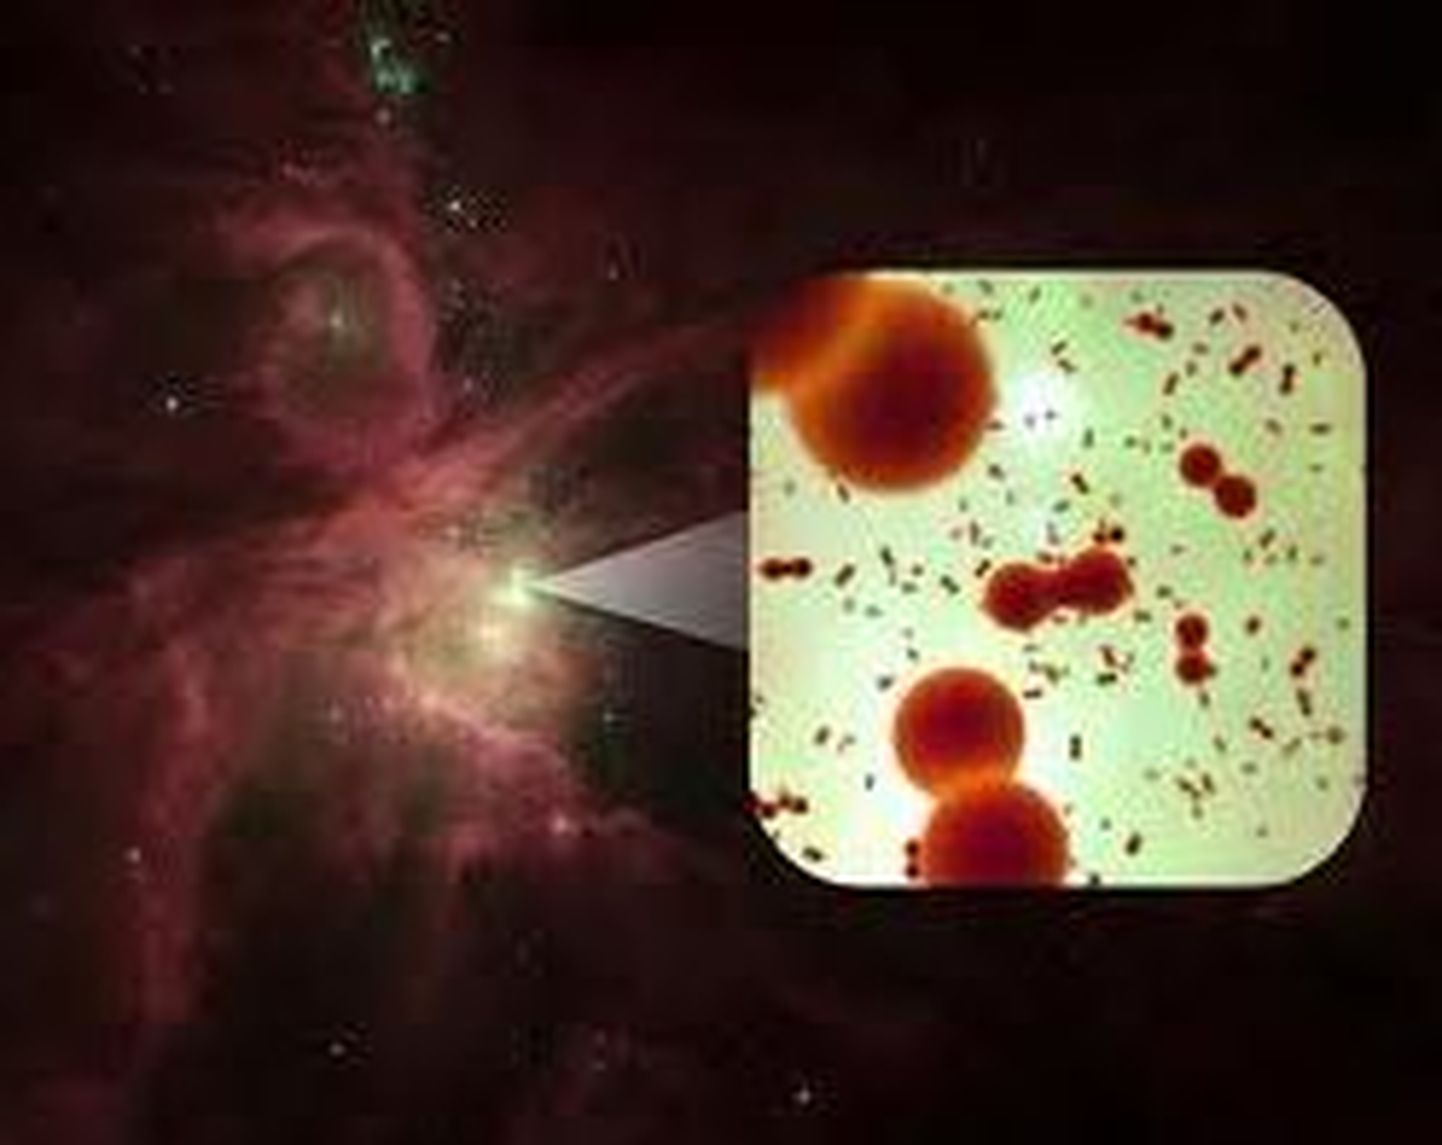 Herscheli kosmoseobservatooriumi teleskoobi ja infarpunadetektorite abil saadi kinnitus, et Orioni udukogus on hapnikumolekule